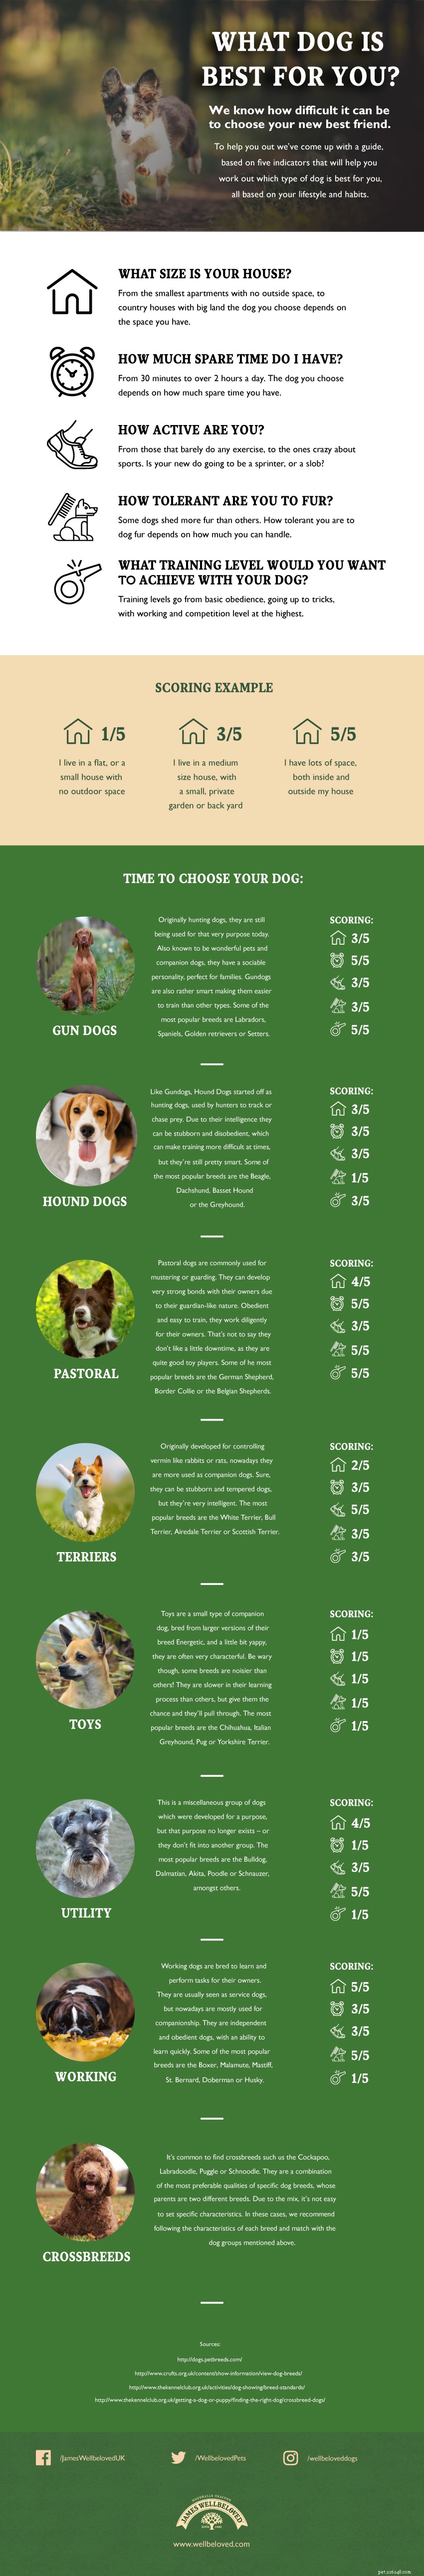 Que cachorro você deve comprar - Infográfico